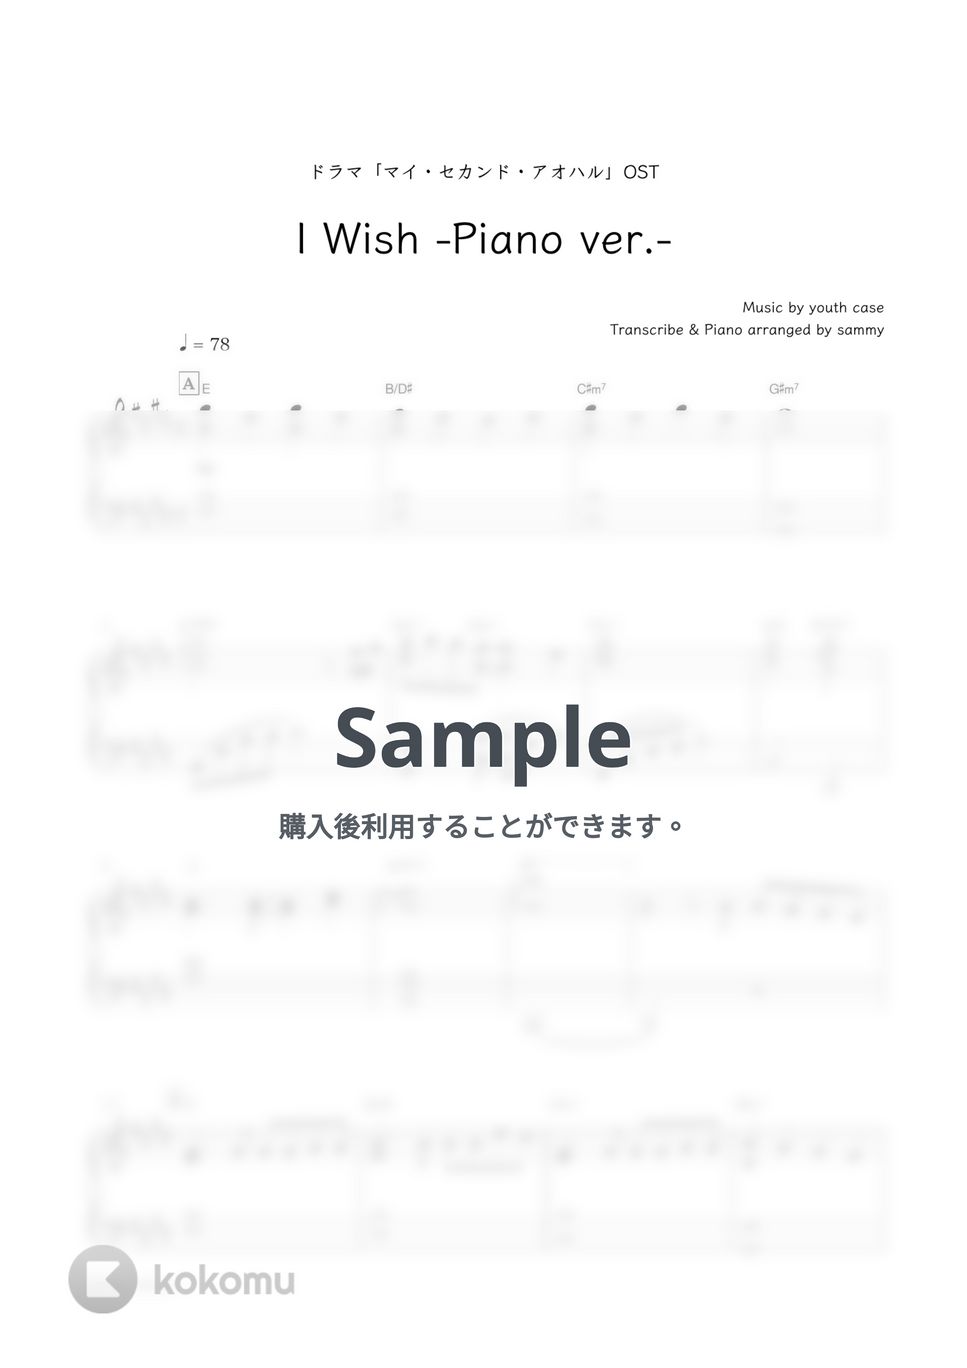 なにわ男子・ドラマ「マイ・セカンド・アオハル」OST - I Wish (Piano ver.) by sammy